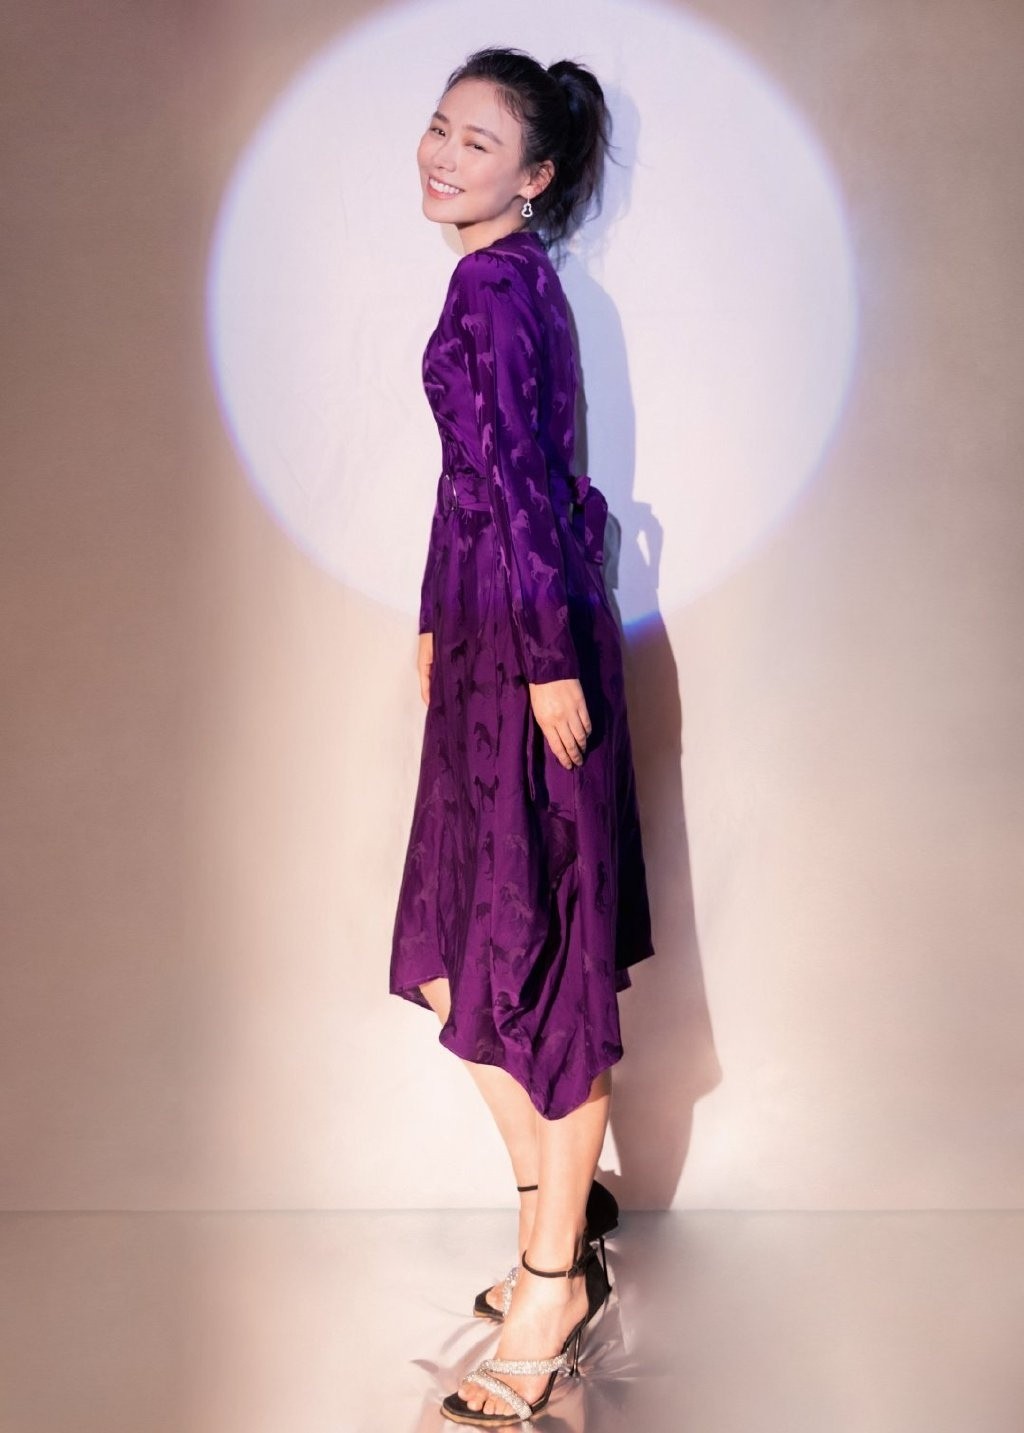 马思纯紫色缎面长裙优雅气质写真